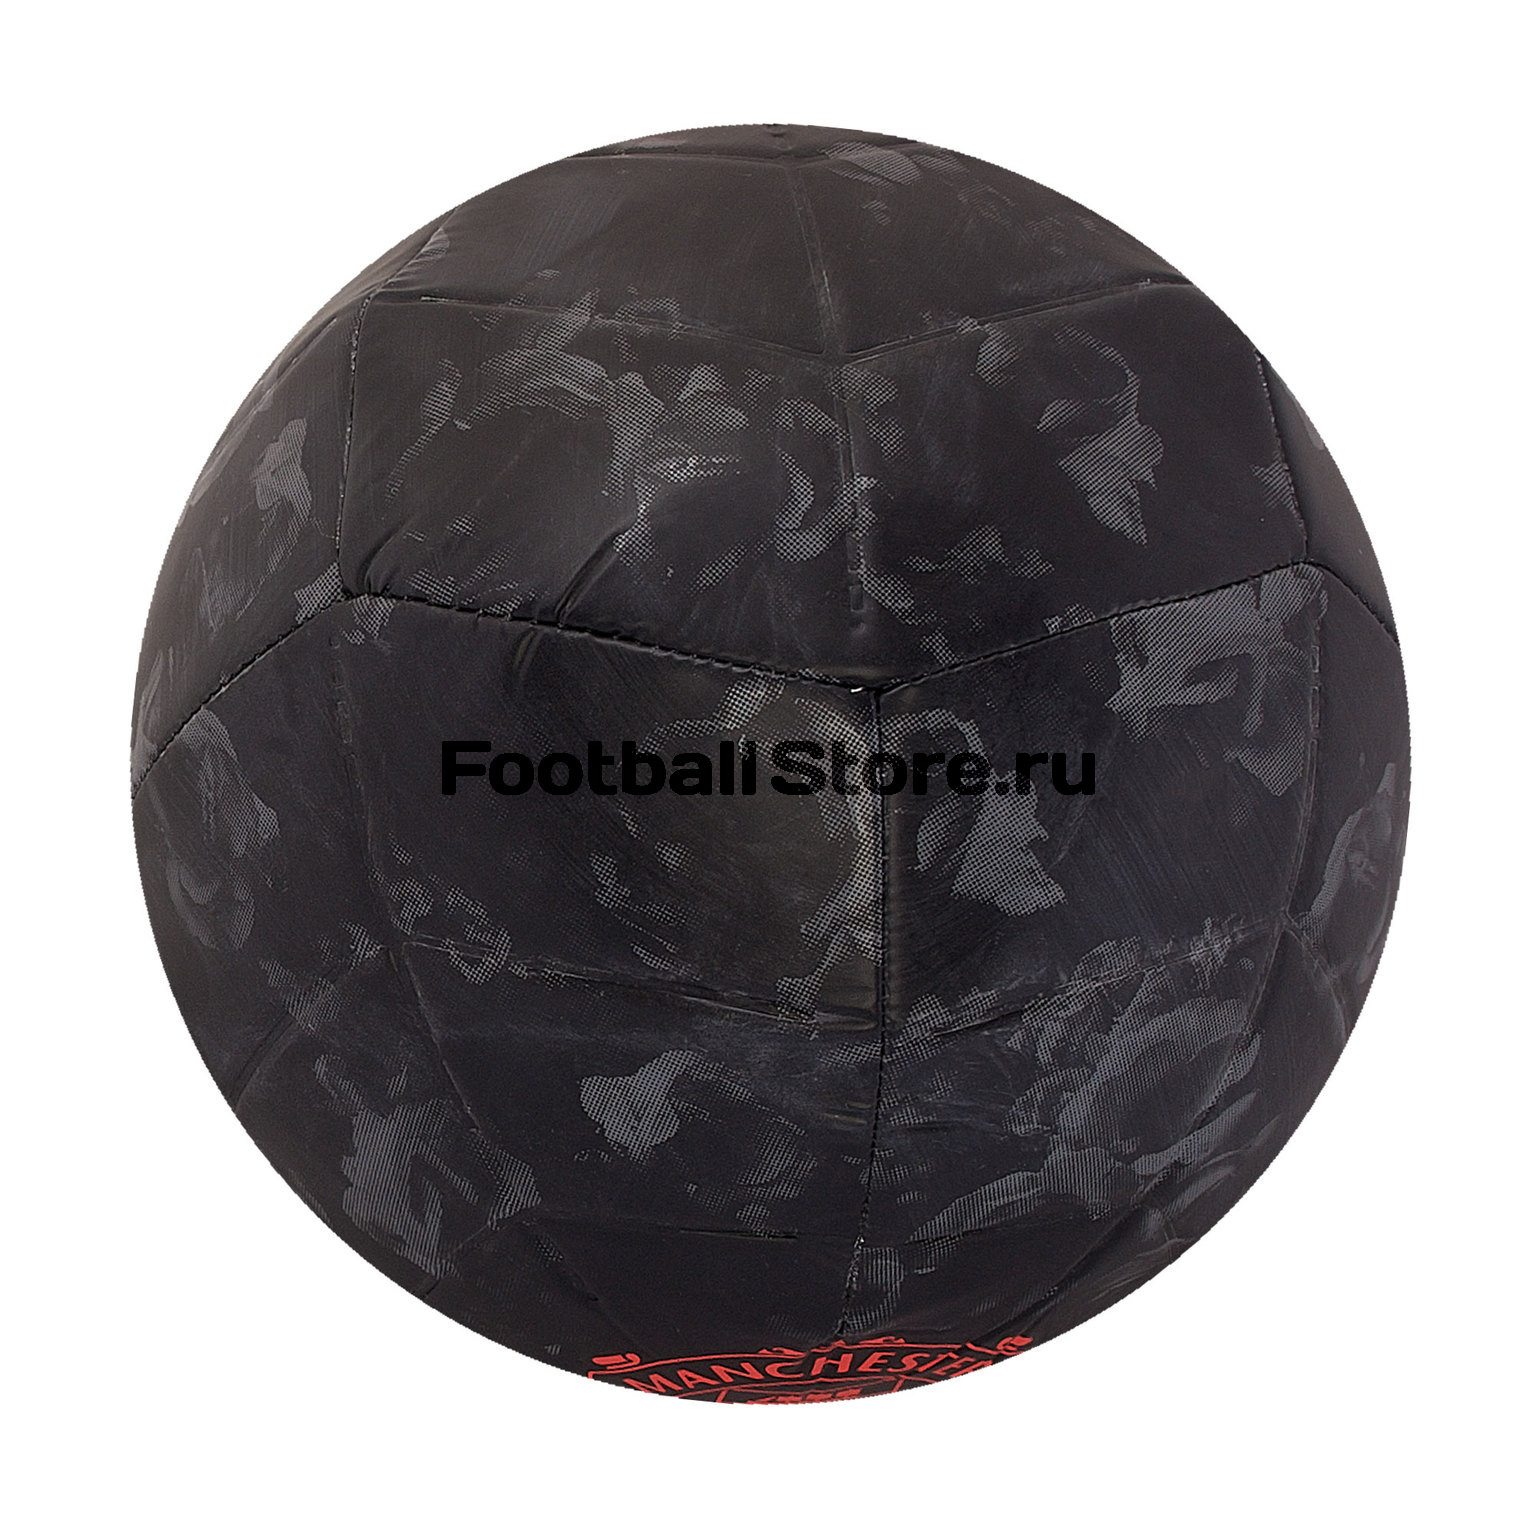 Футбольный мяч Adidas Manchester United DY2527